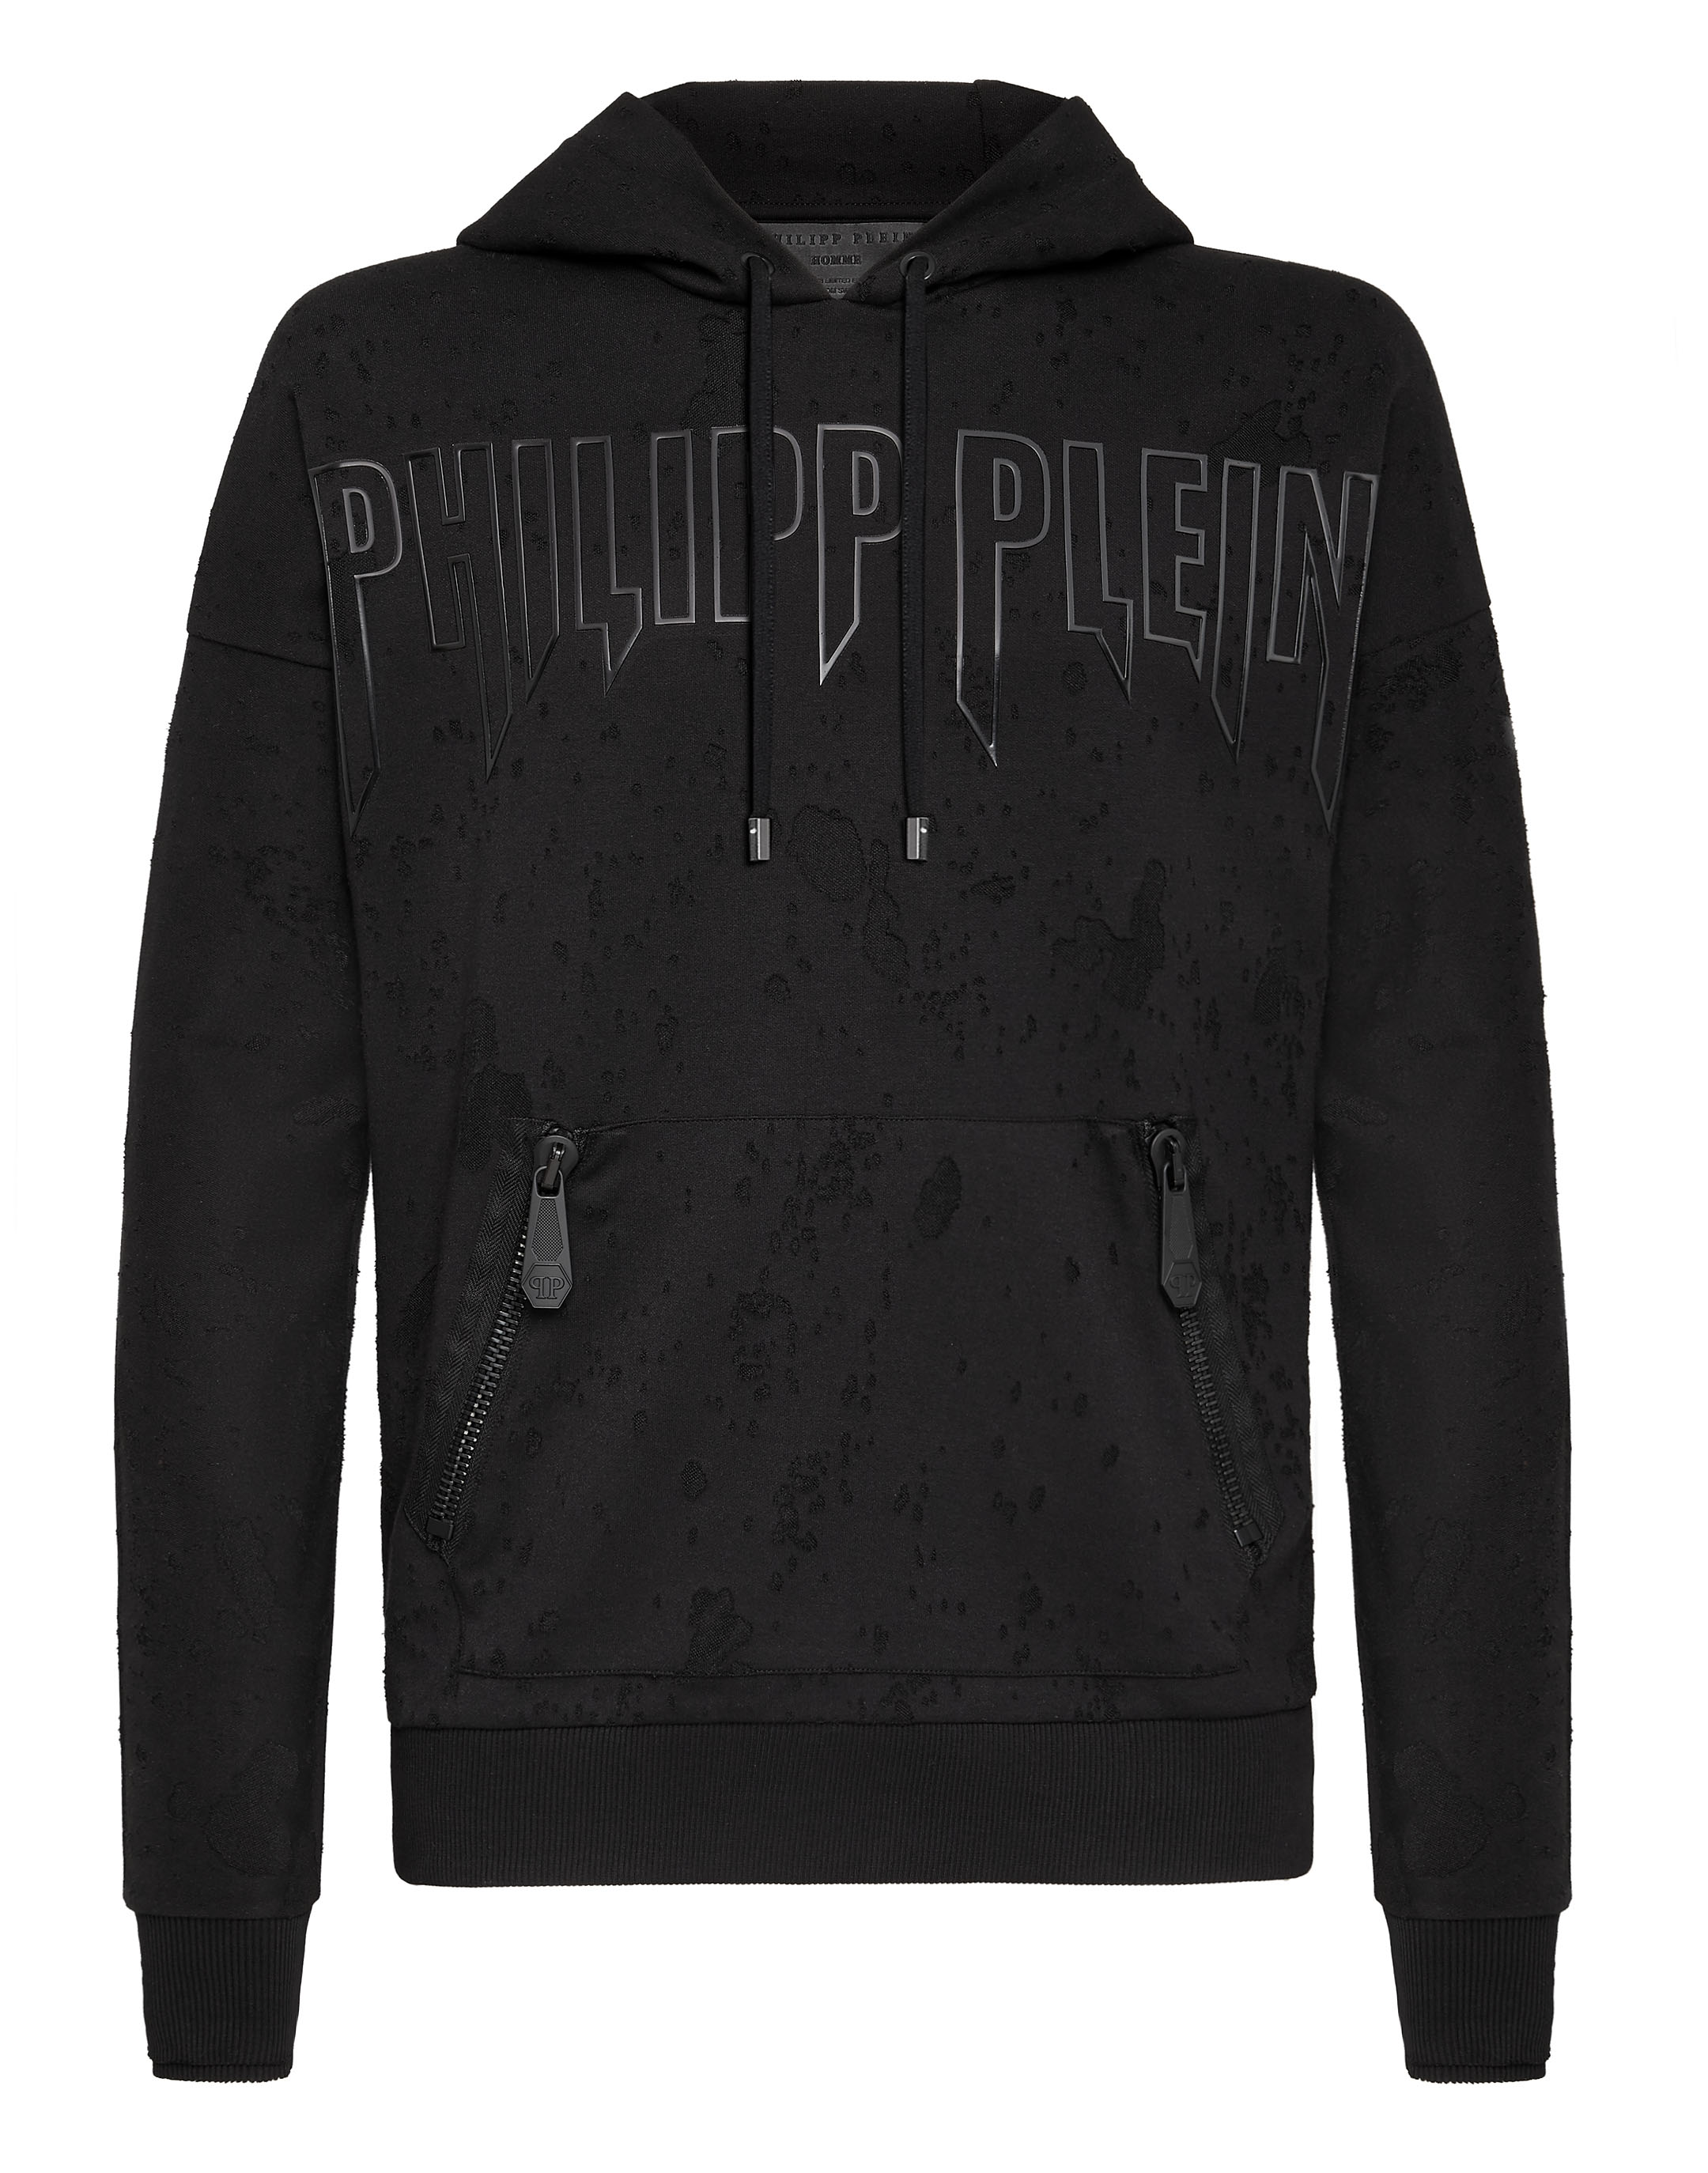 Philipp Plein Hoodie Sweatshirt Rock Pp In Black / Black | ModeSens